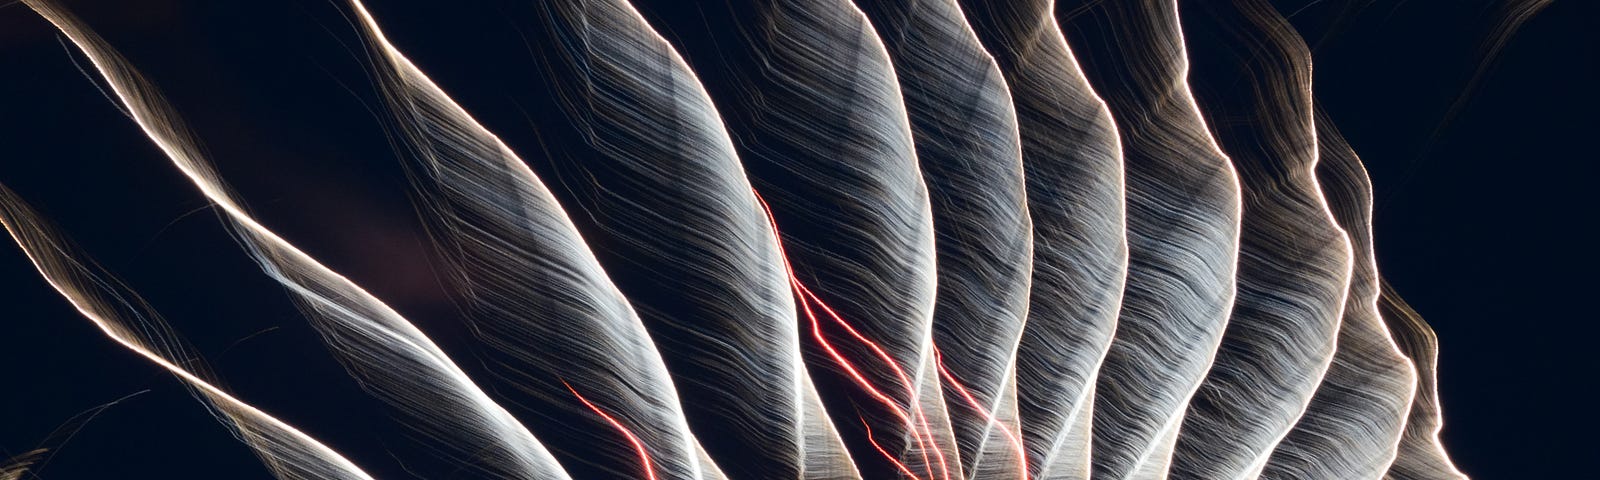 Beautiful energetic electrical waves